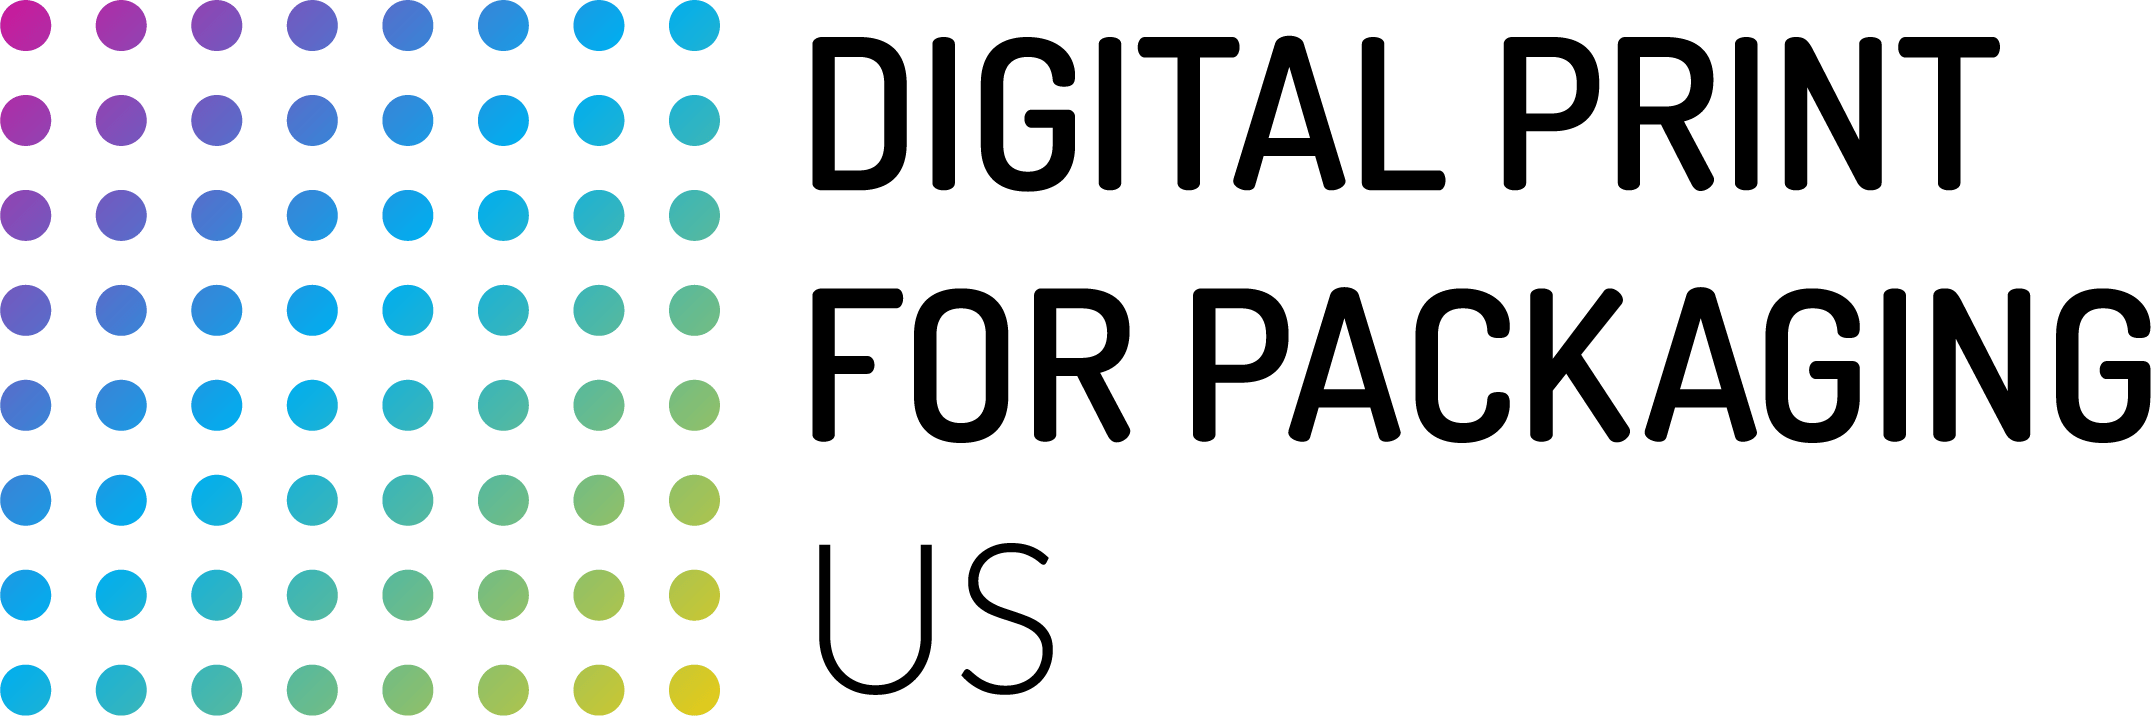 Digital Print for Packaging US 2020